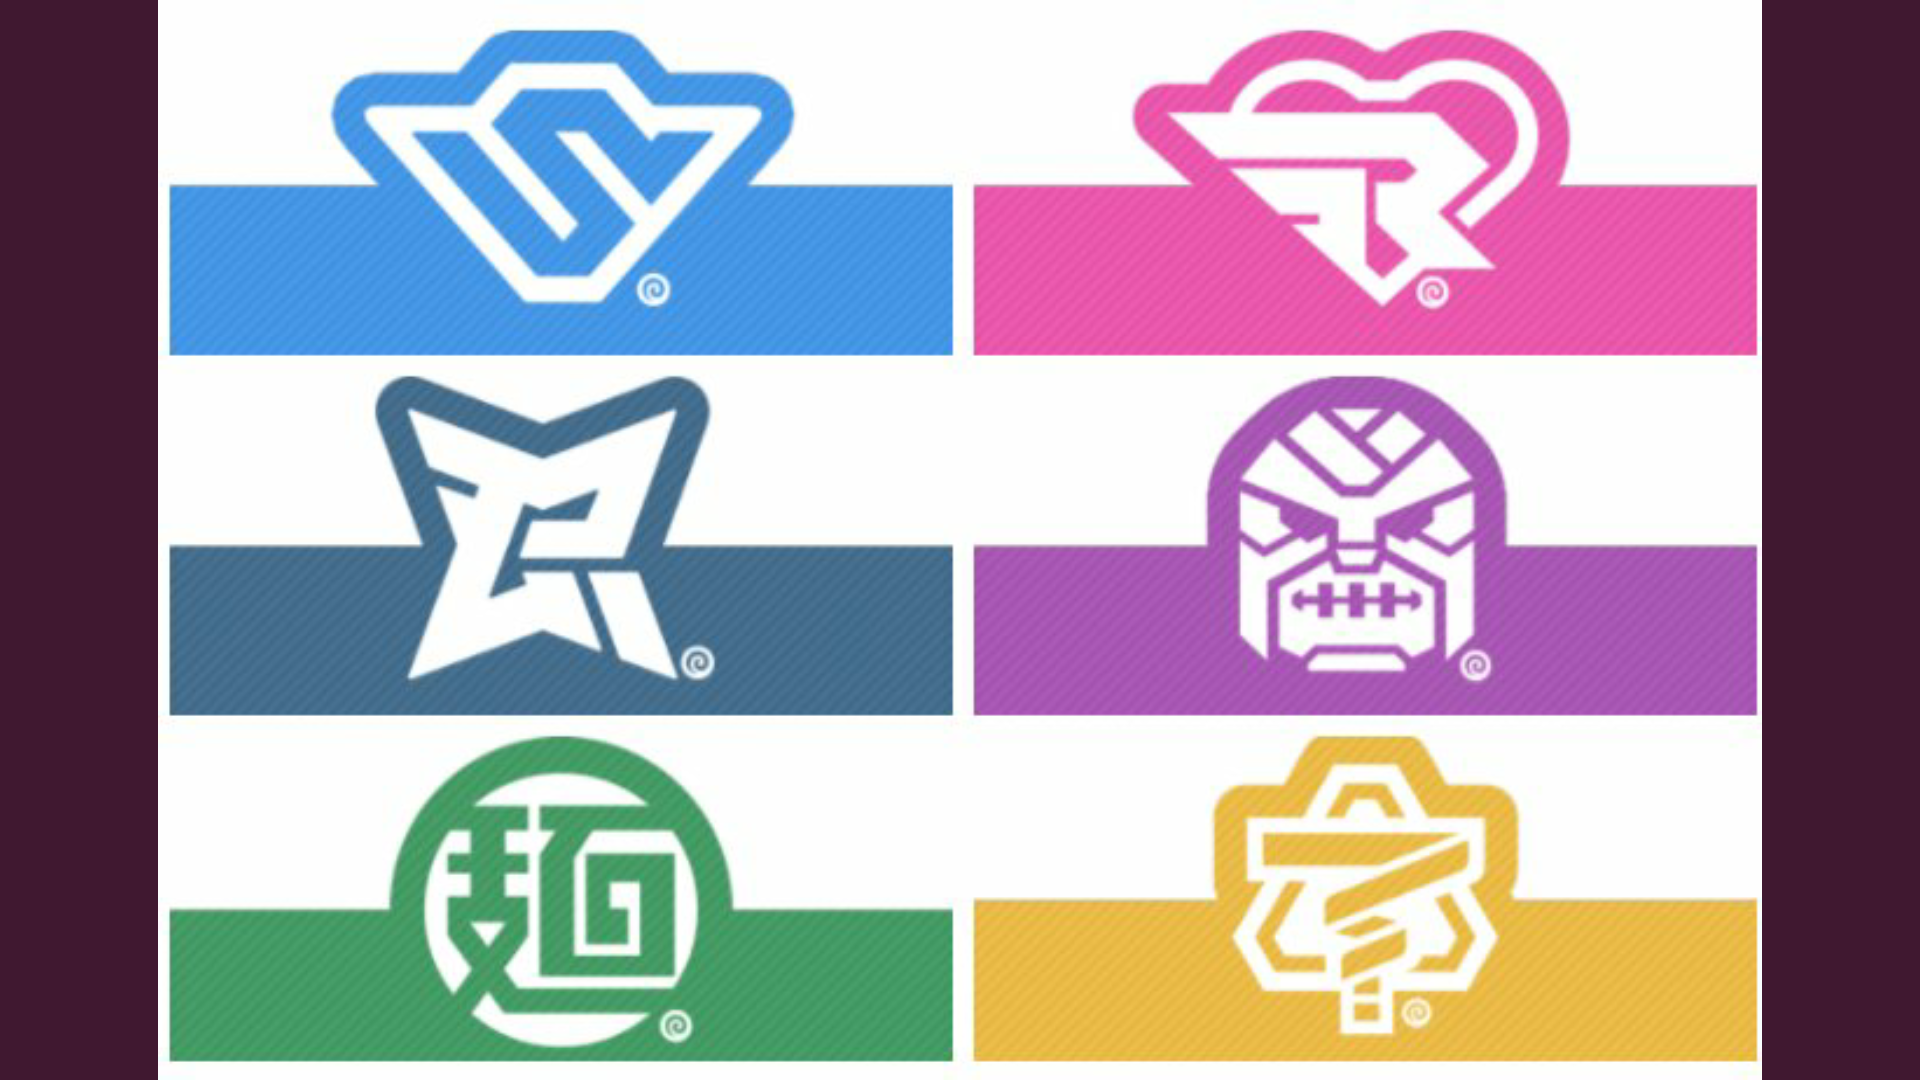 Nintendo registra los logos de los personajes de ARMS para usarlos en artículos de merchandising